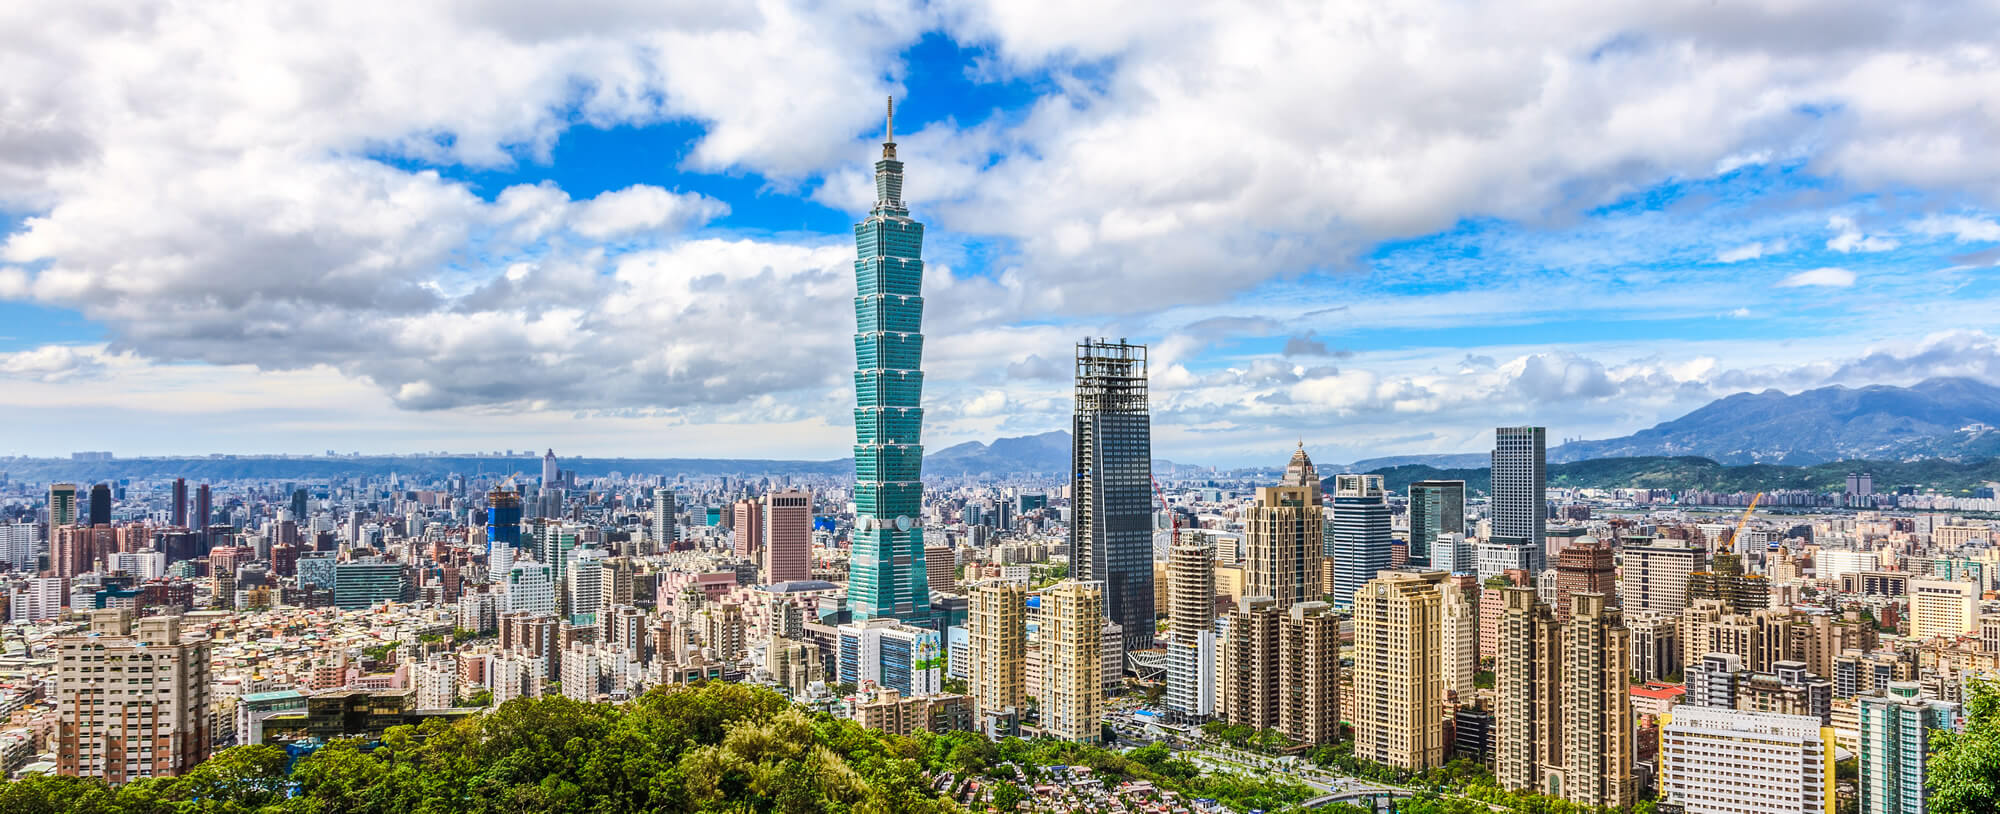 Panoramic of Taipei city skyline